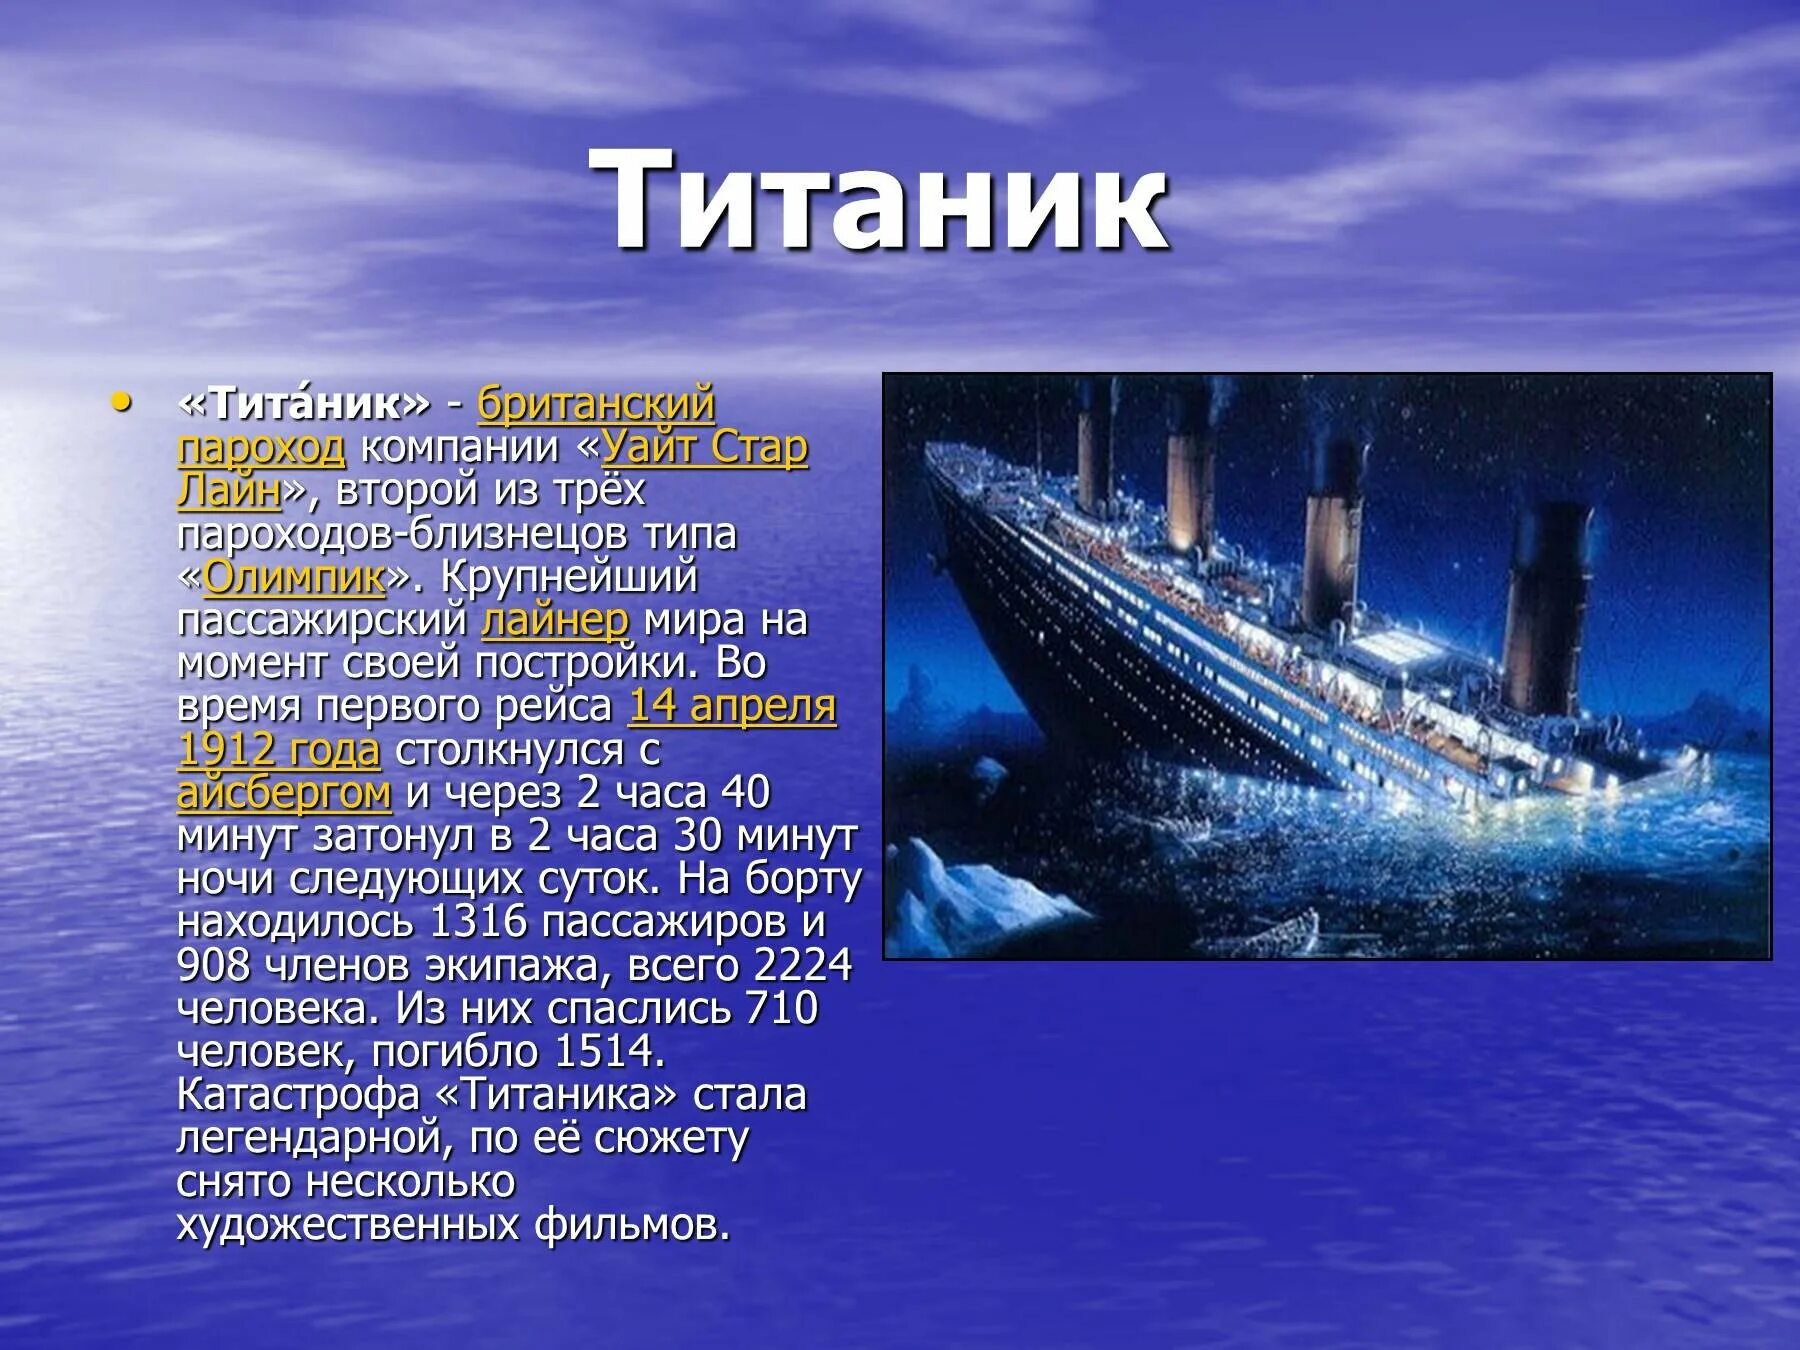 Песня про пароход. Титаник презентация. Интересные факты о пароходах. Сообщение про корабль Титаник. Сообщение о Титанике.